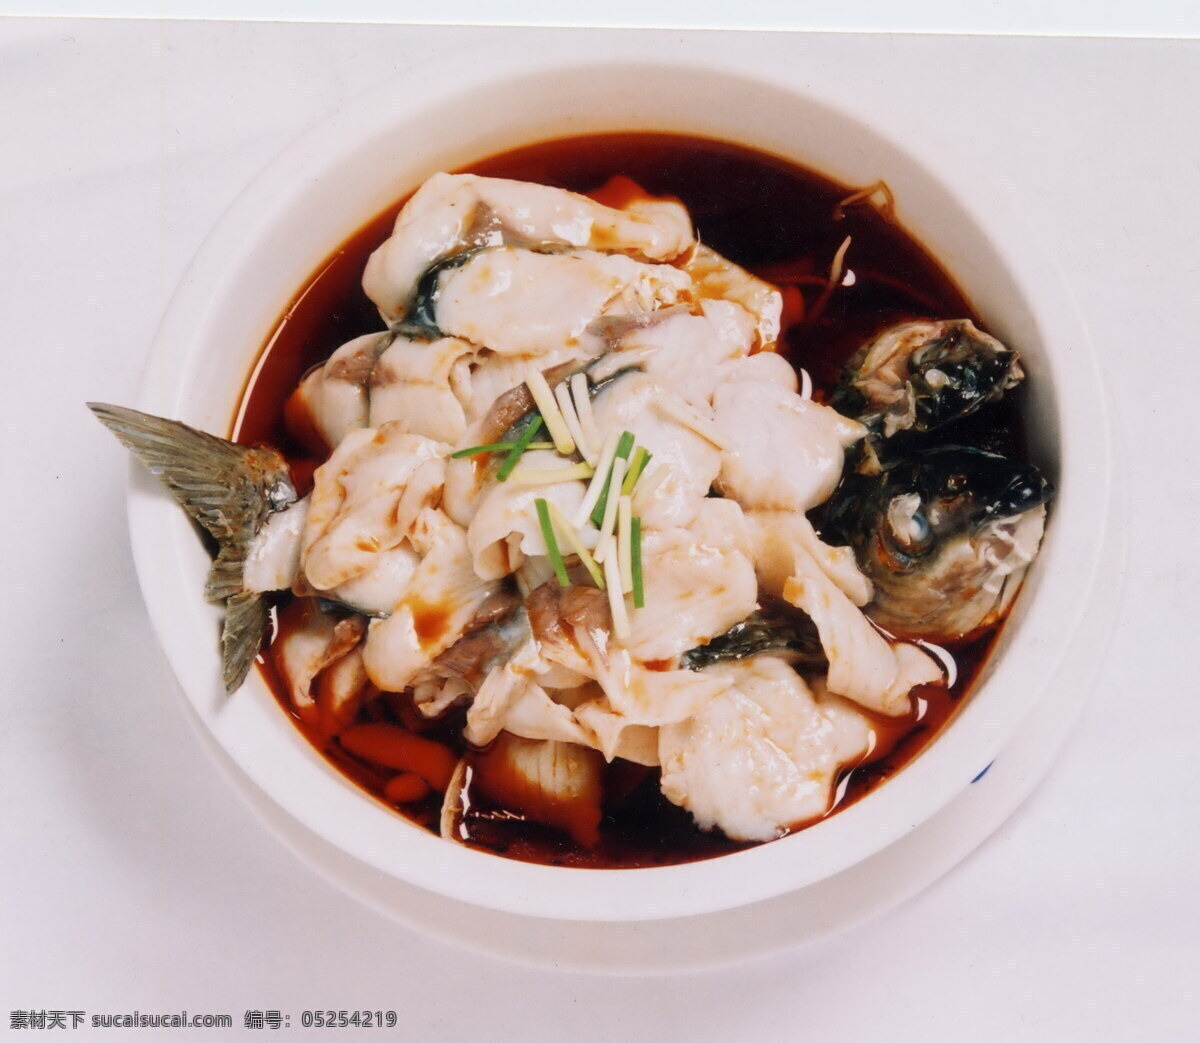 建福 香 口 鱼 美食 食物 菜肴 餐饮美食 美味 佳肴食物 中国菜 中华美食 中国菜肴 菜谱